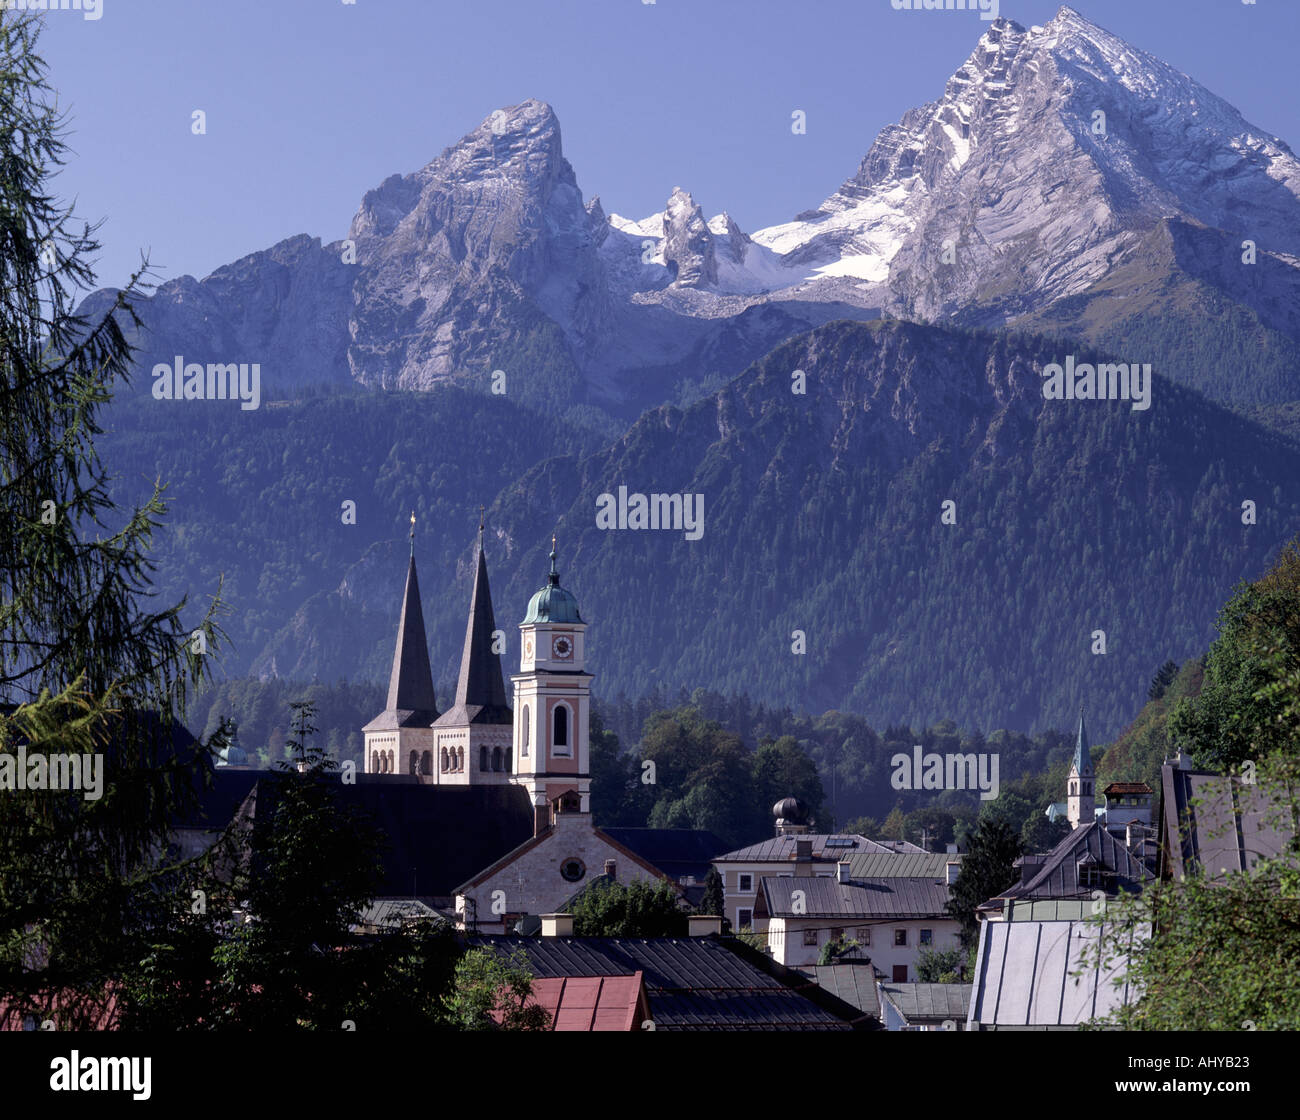 Alemania Berchtesgadner Tierra Berchtesgaden y el Alp de Watzman Foto de stock